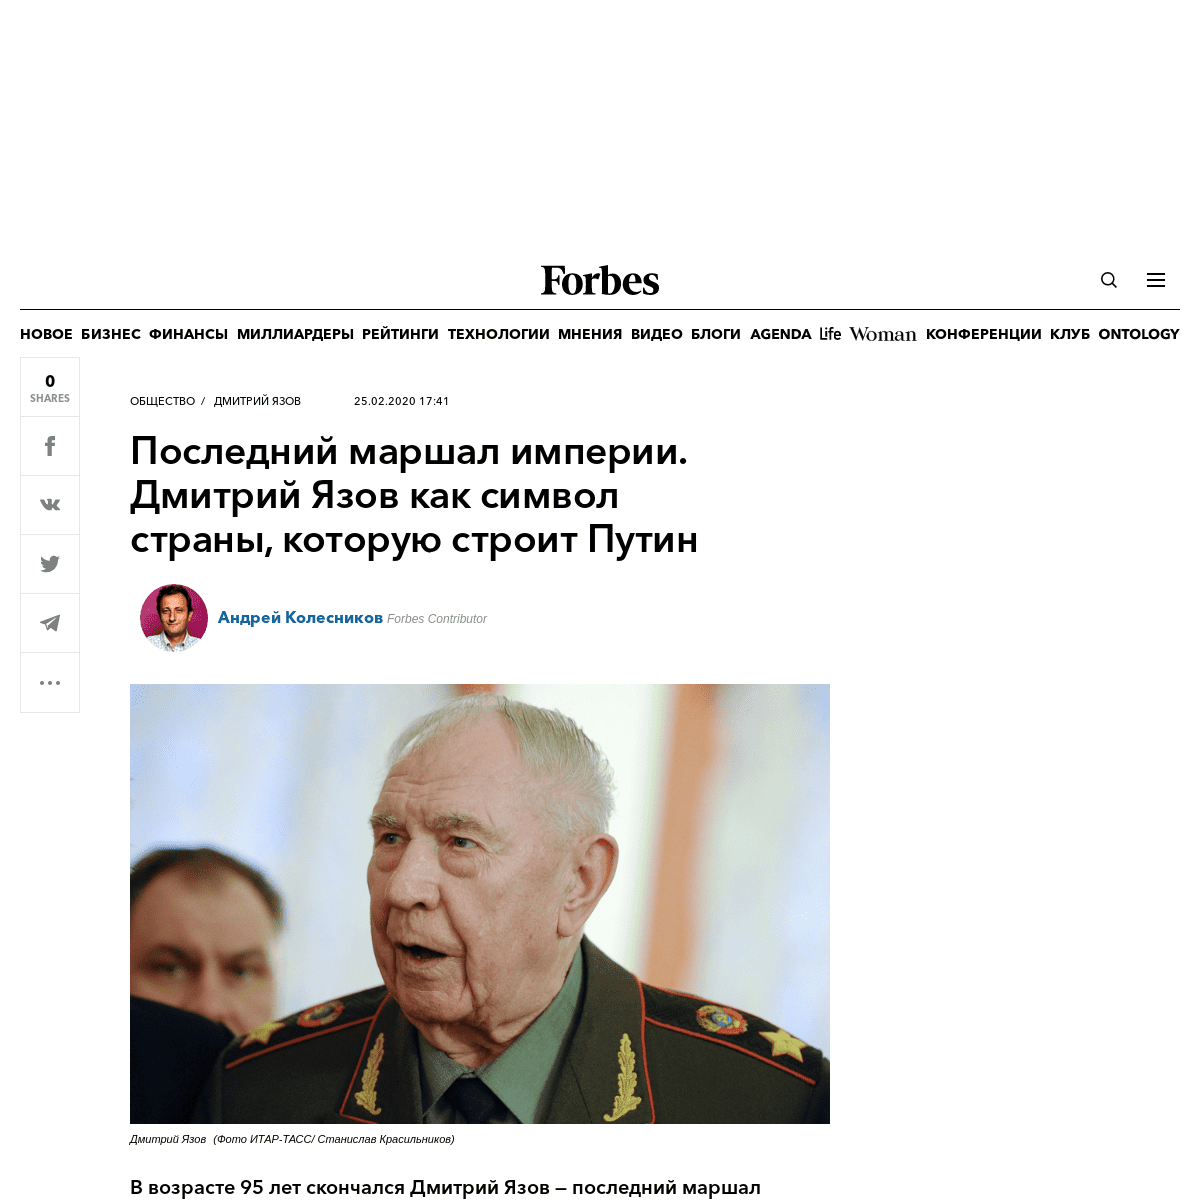 A complete backup of www.forbes.ru/obshchestvo/393823-posledniy-marshal-imperii-dmitriy-yazov-kak-simvol-strany-kotoruyu-stroit-